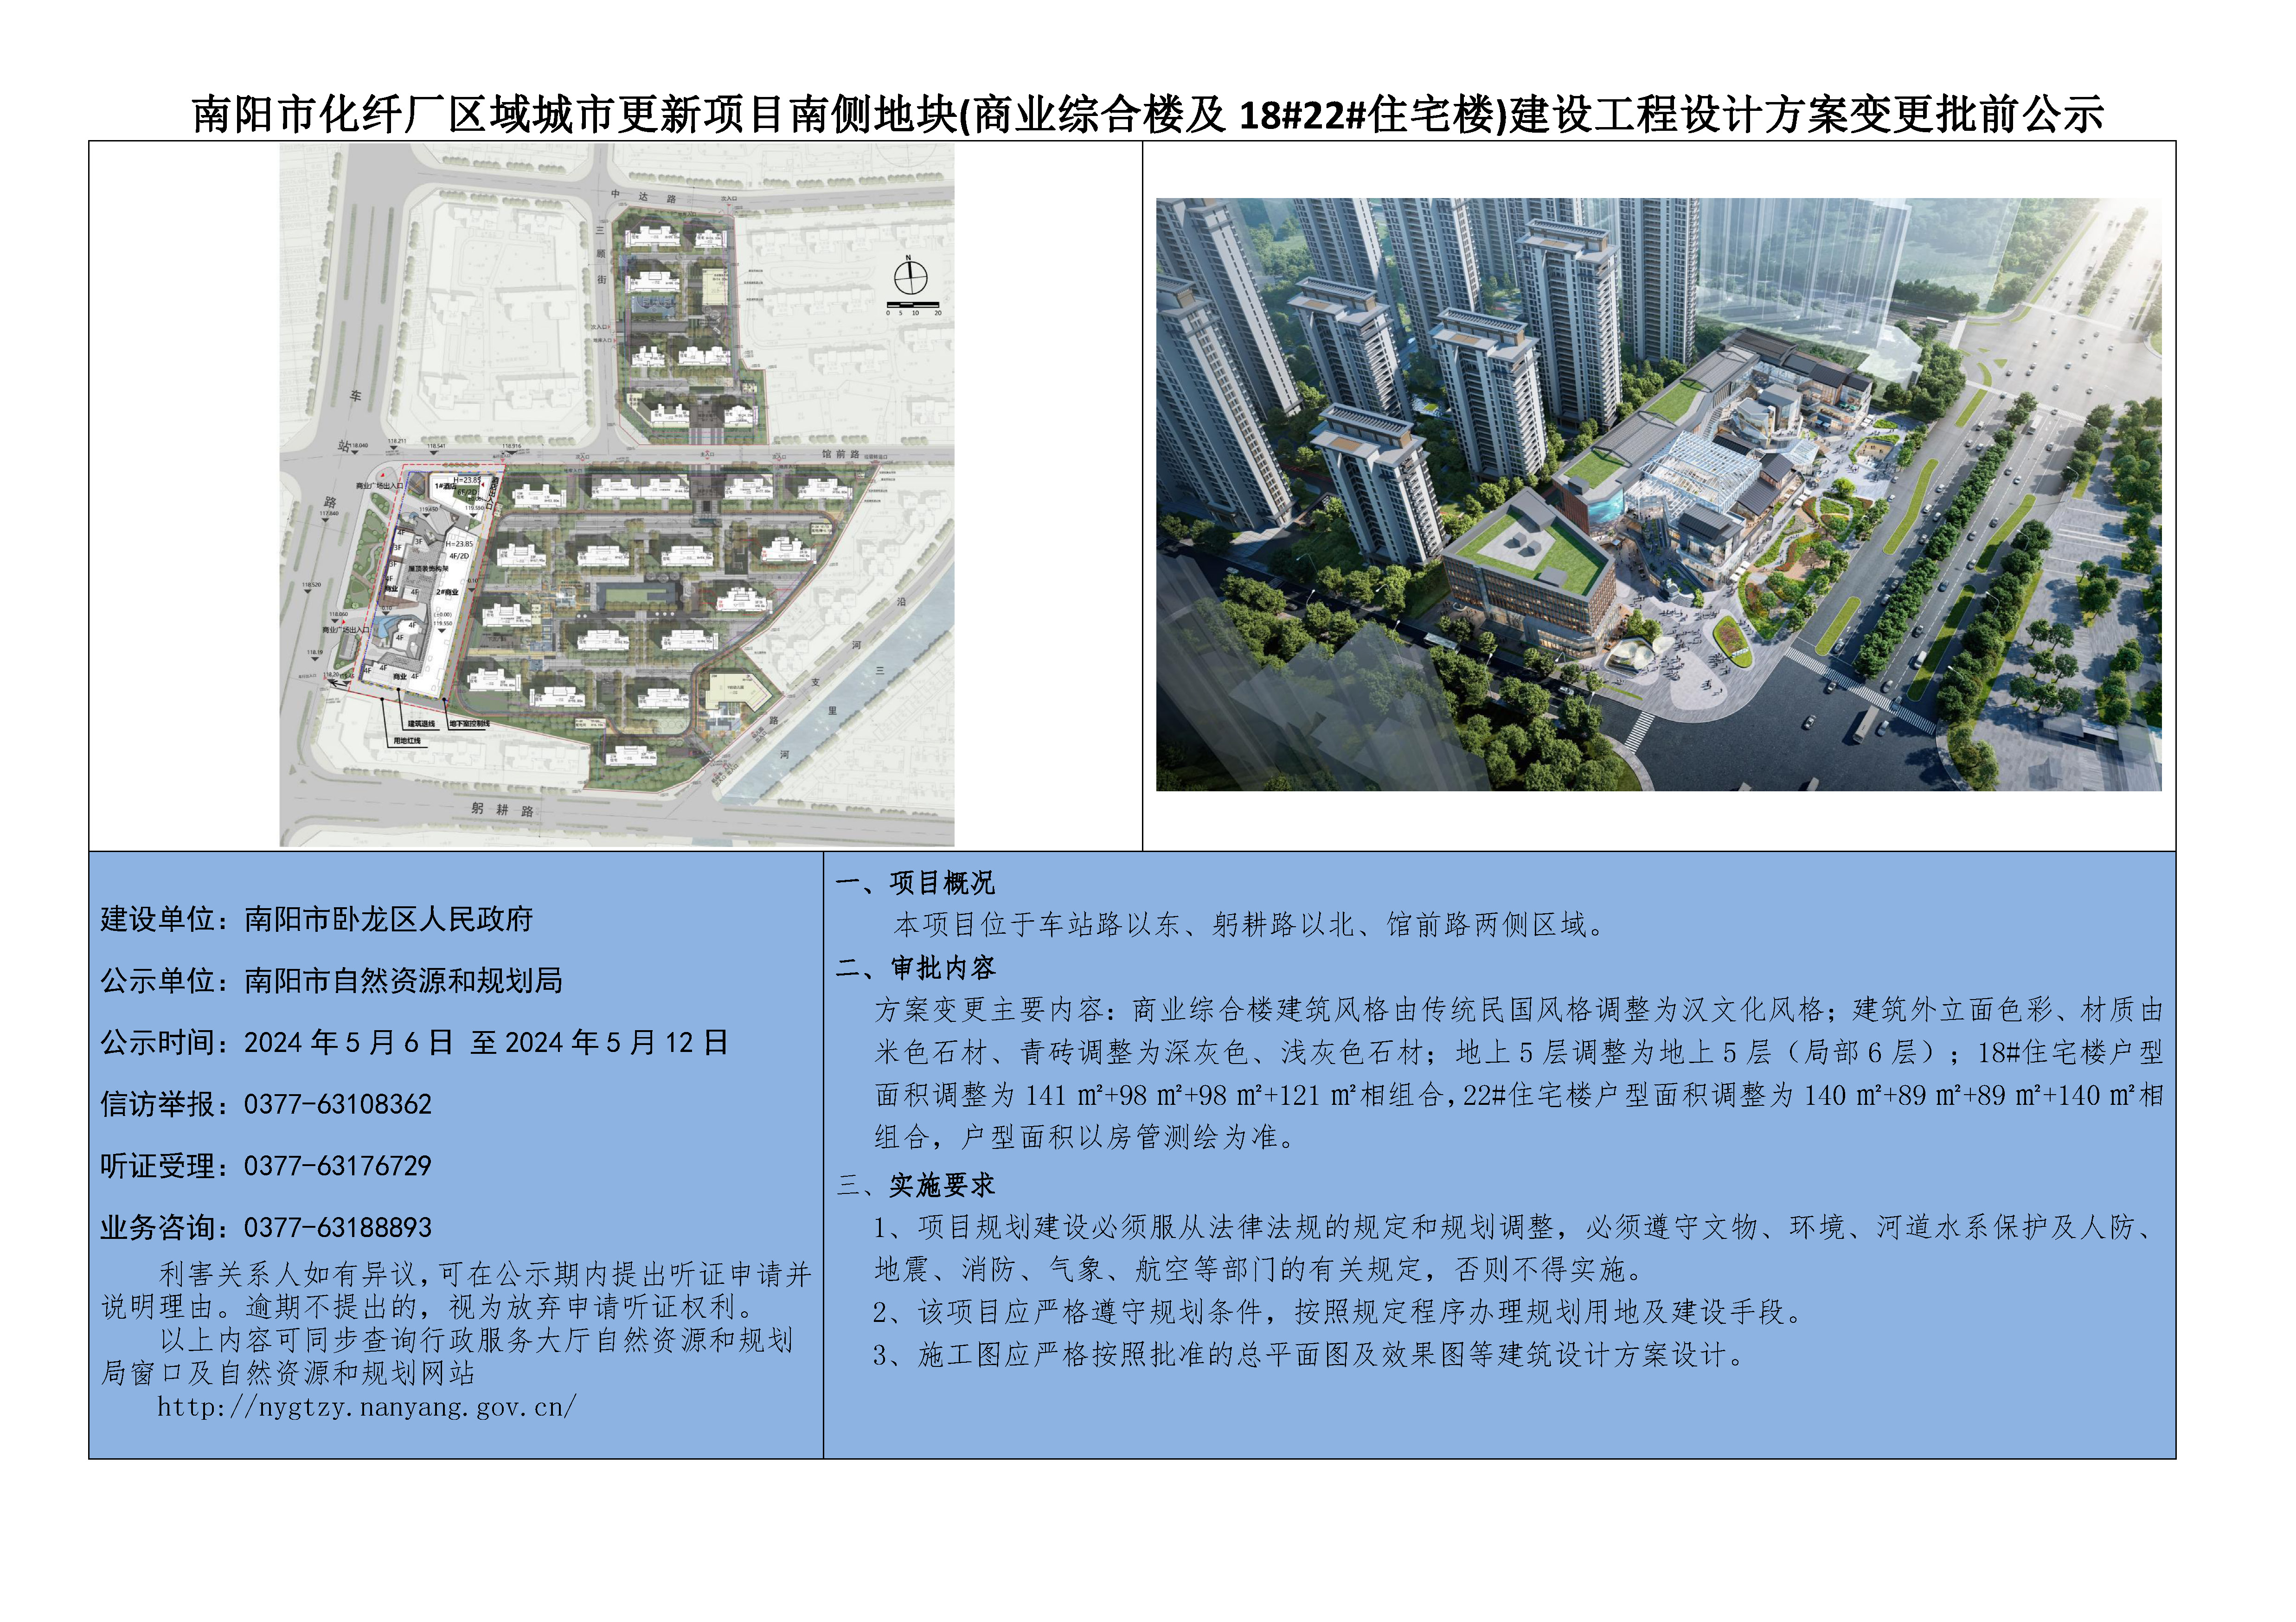 南阳市化纤厂区域城市更新项目南侧地块(商业综合楼及18#22#住宅楼)建设工程设计方案变更批前公示